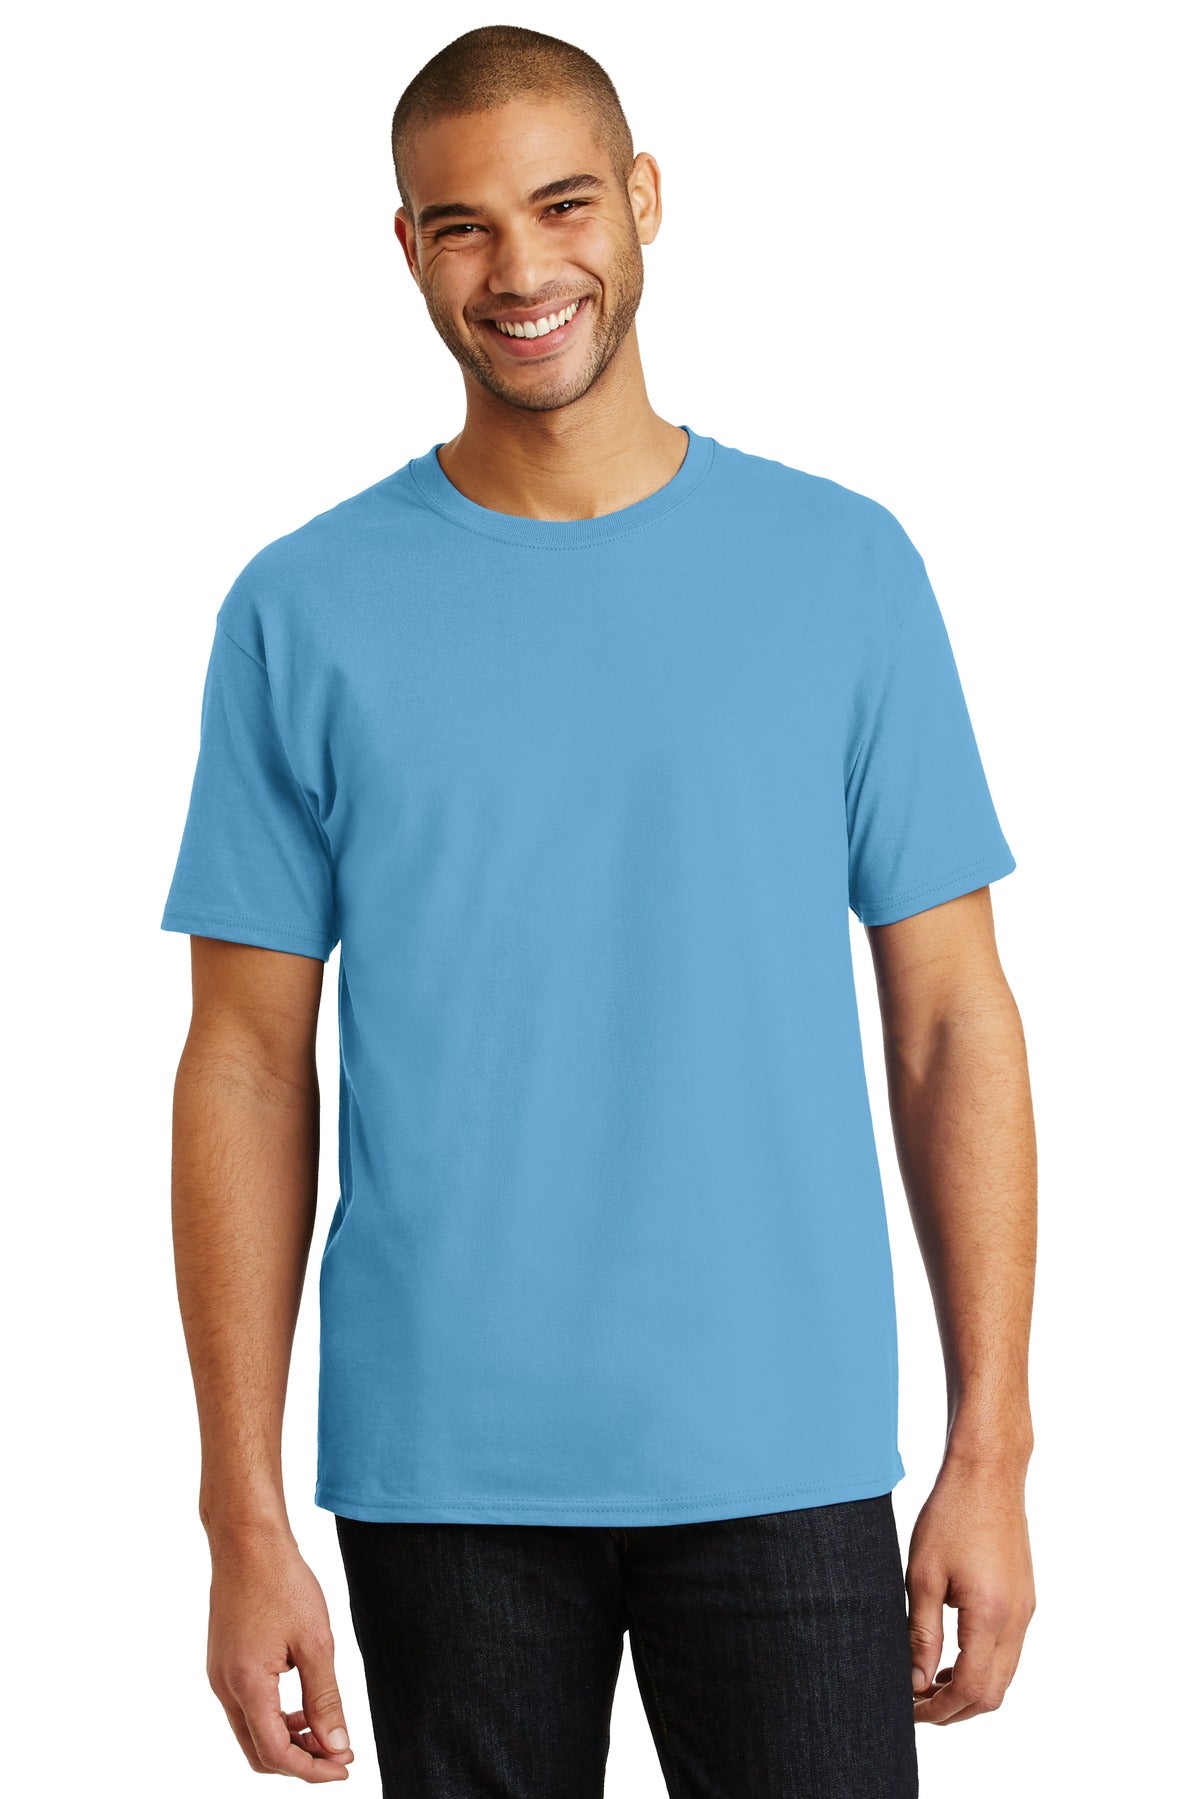 T-Shirts Aquatic Blue Hanes